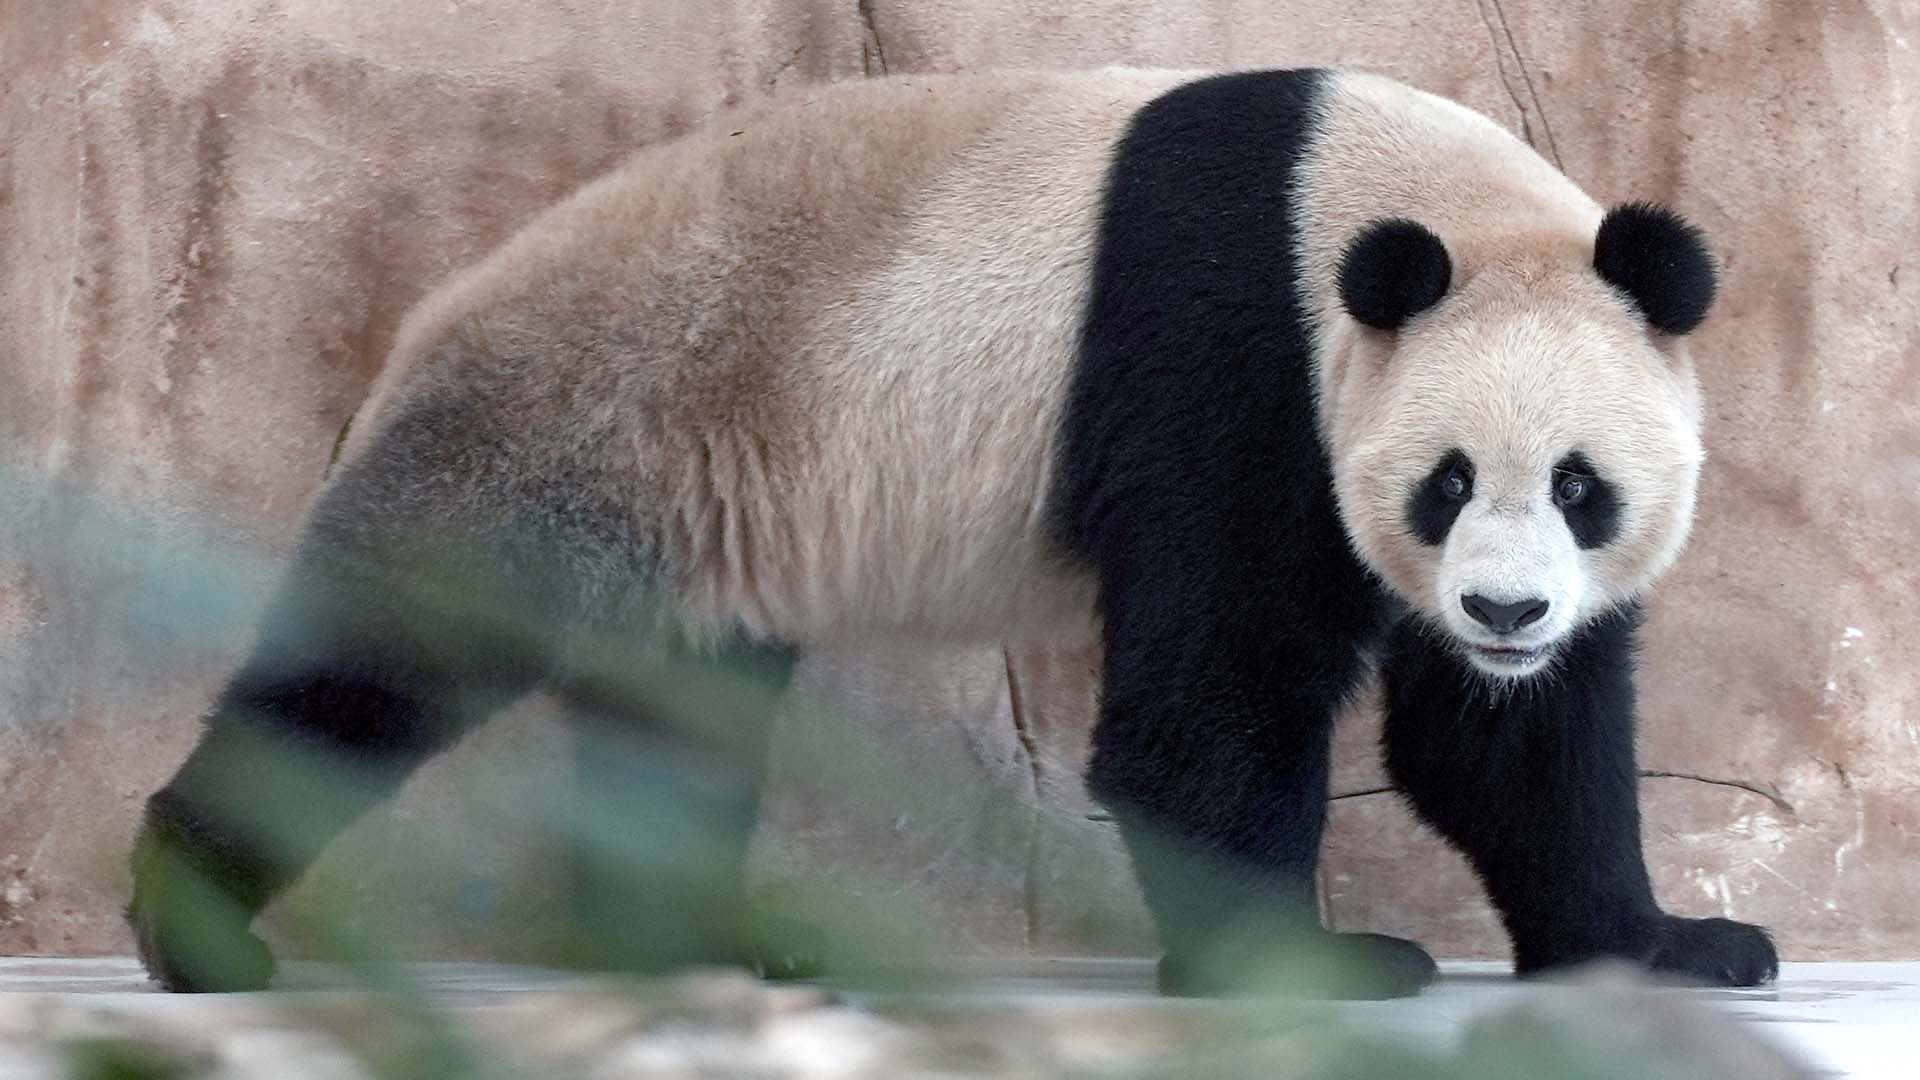 Les pandas, qui se reproduisent rarement à l'état sauvage et se nourrissent de bambou dans les montagnes de l'ouest de la Chine, restent parmi les espèces les plus menacées au monde. 